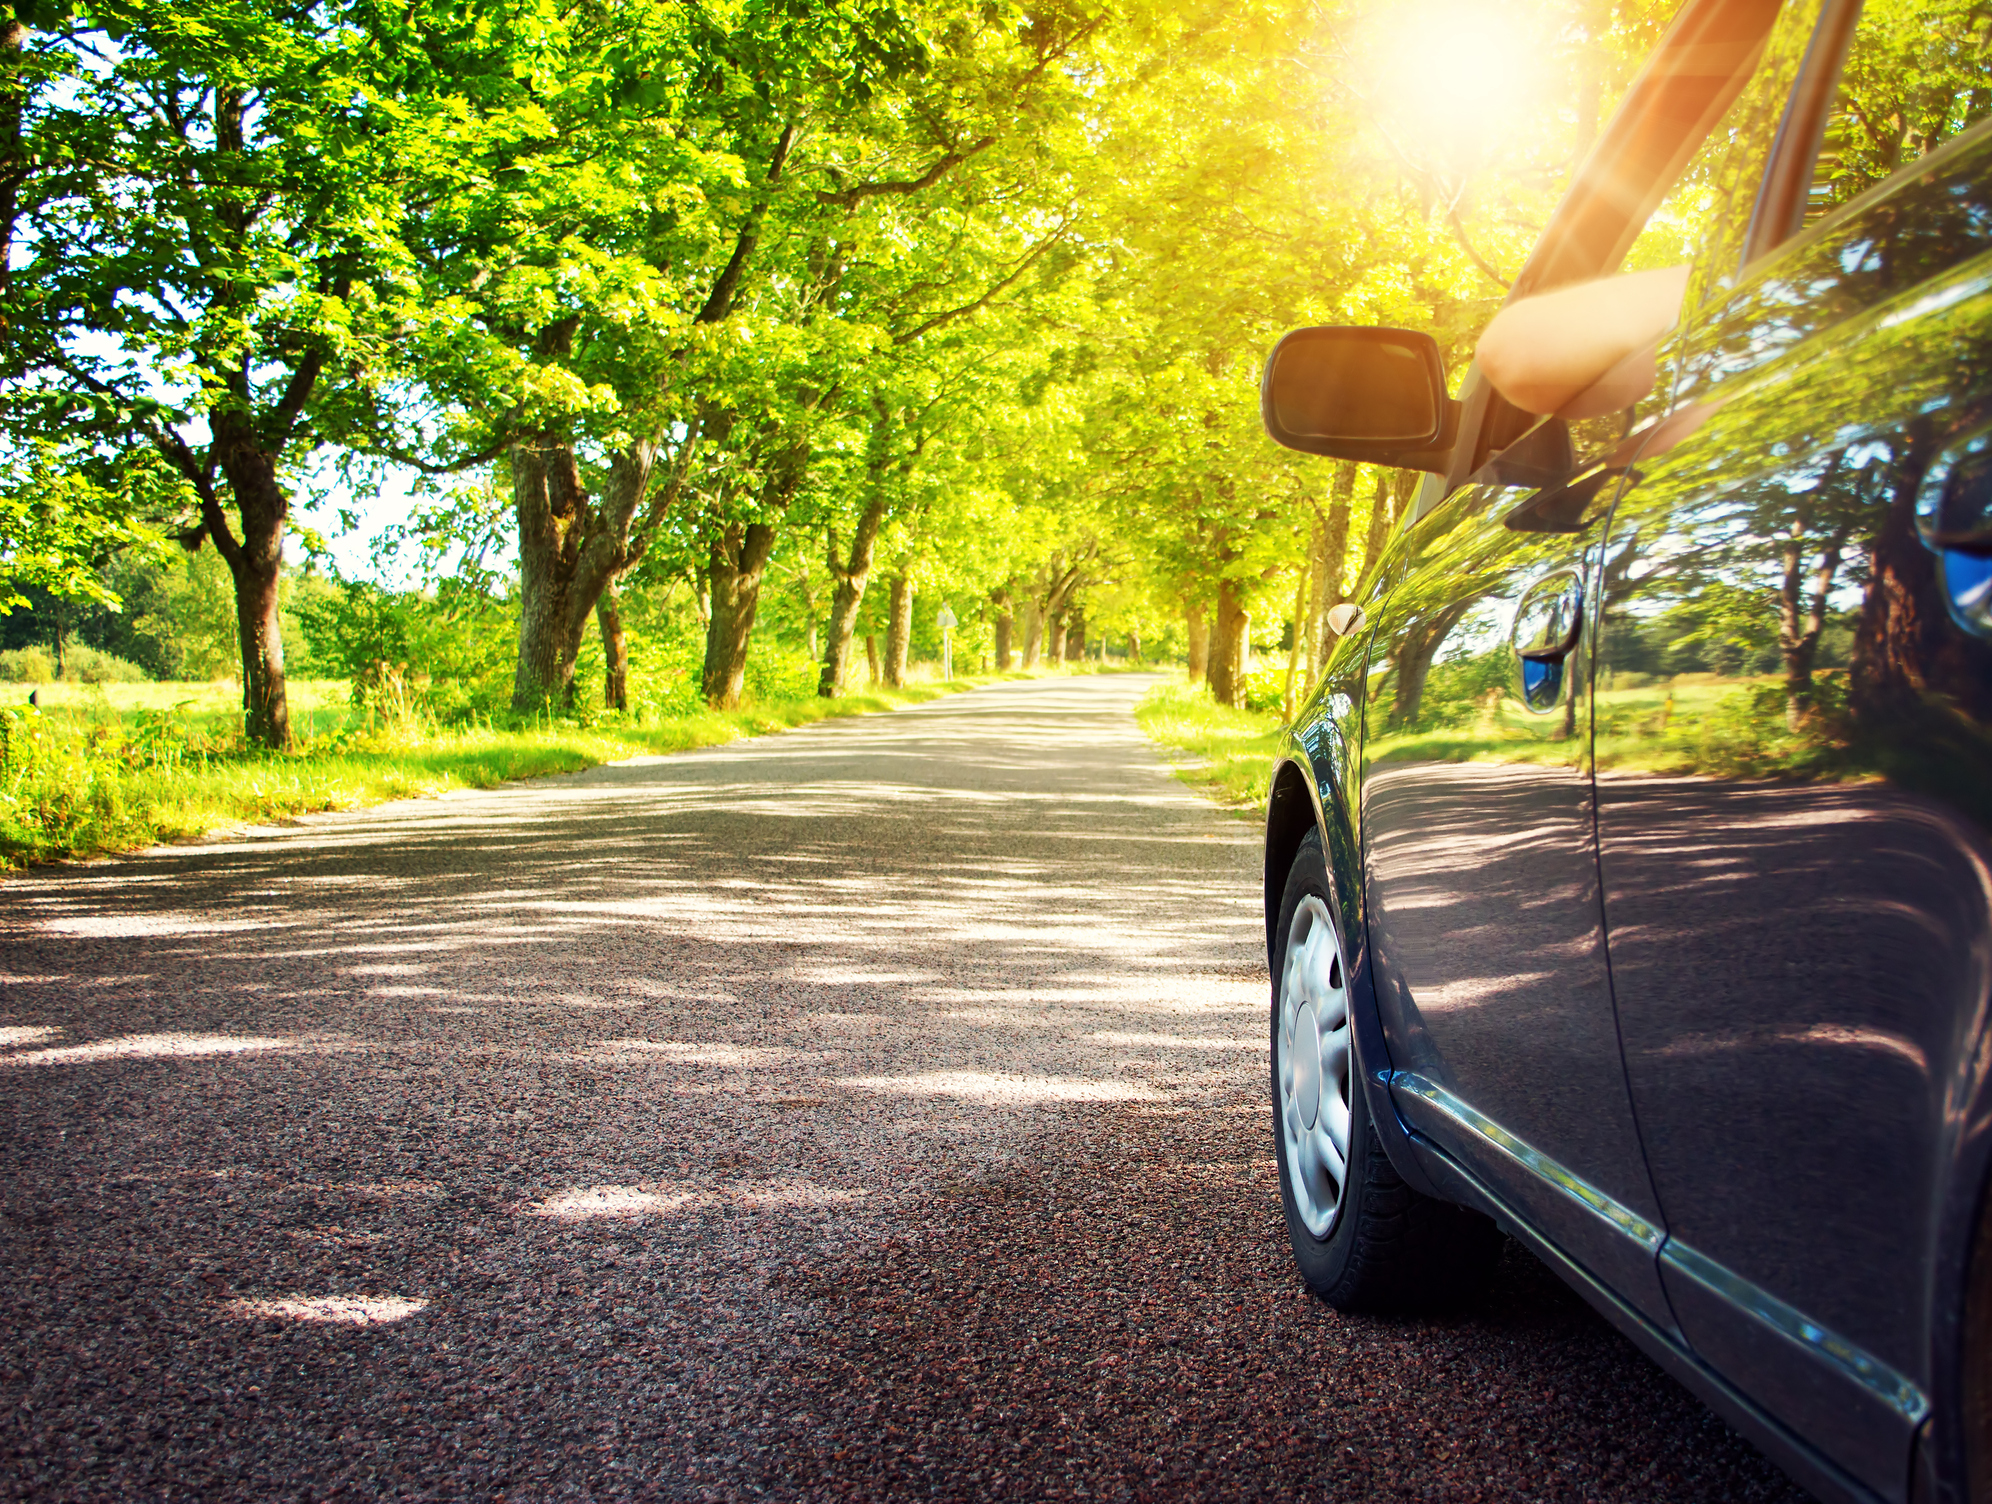 Dunlop Pneus compartilha dicas de segurança nas estradas durante as altas temperaturas do verão